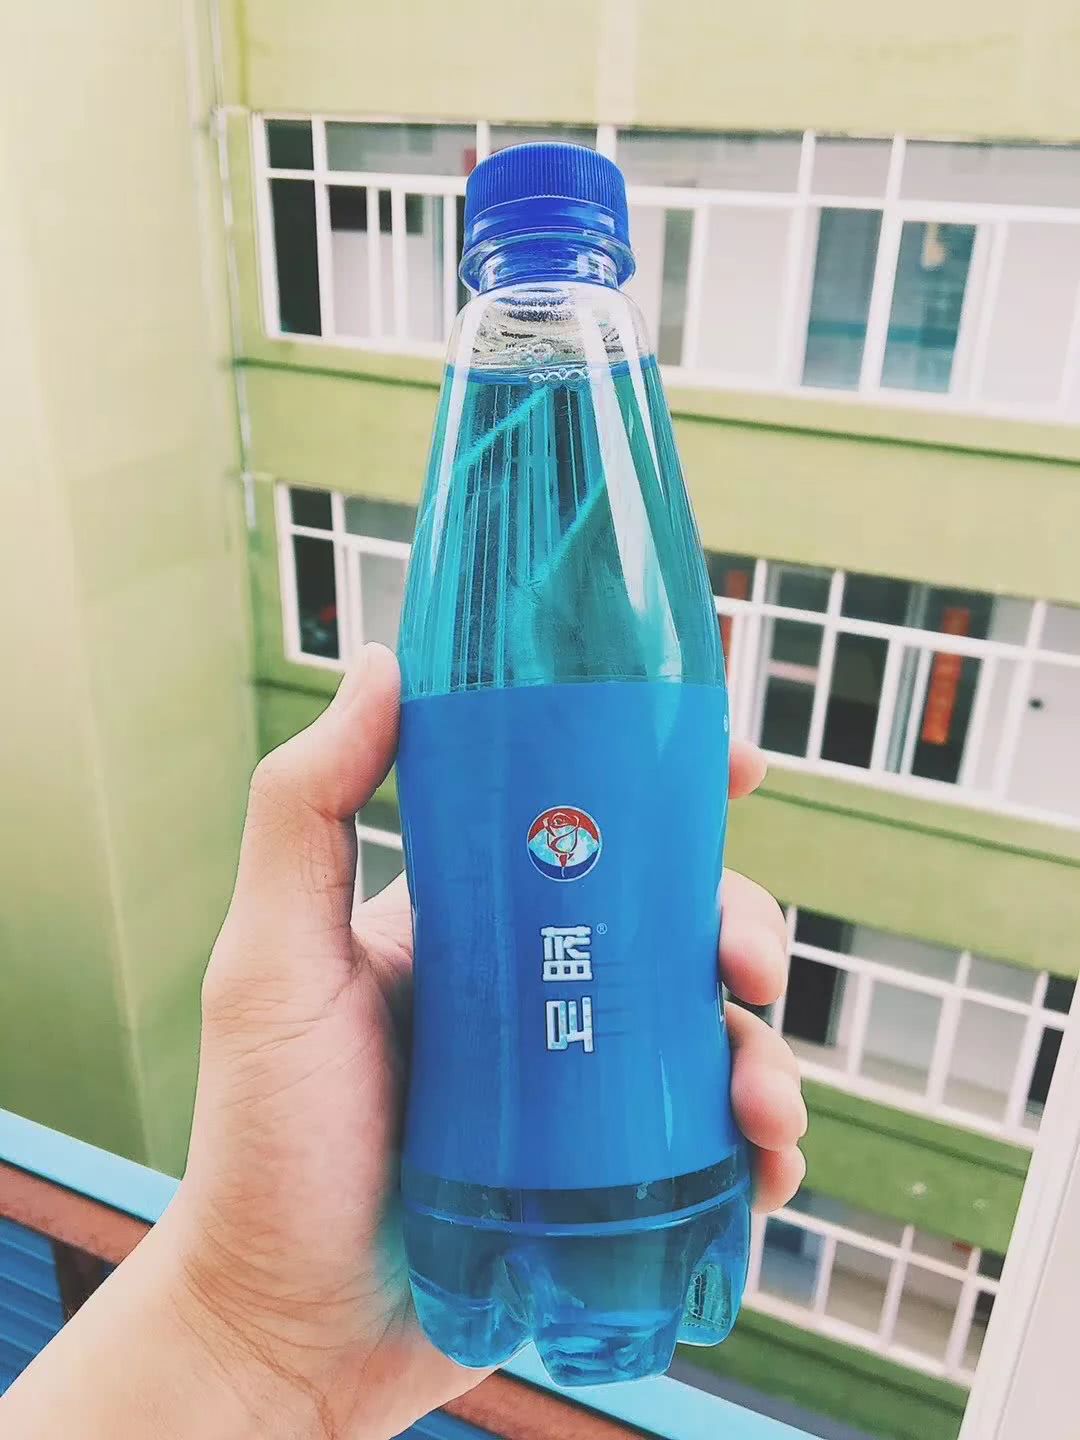 这瓶名叫蓝叫的饮料,彻底在泉州火了!